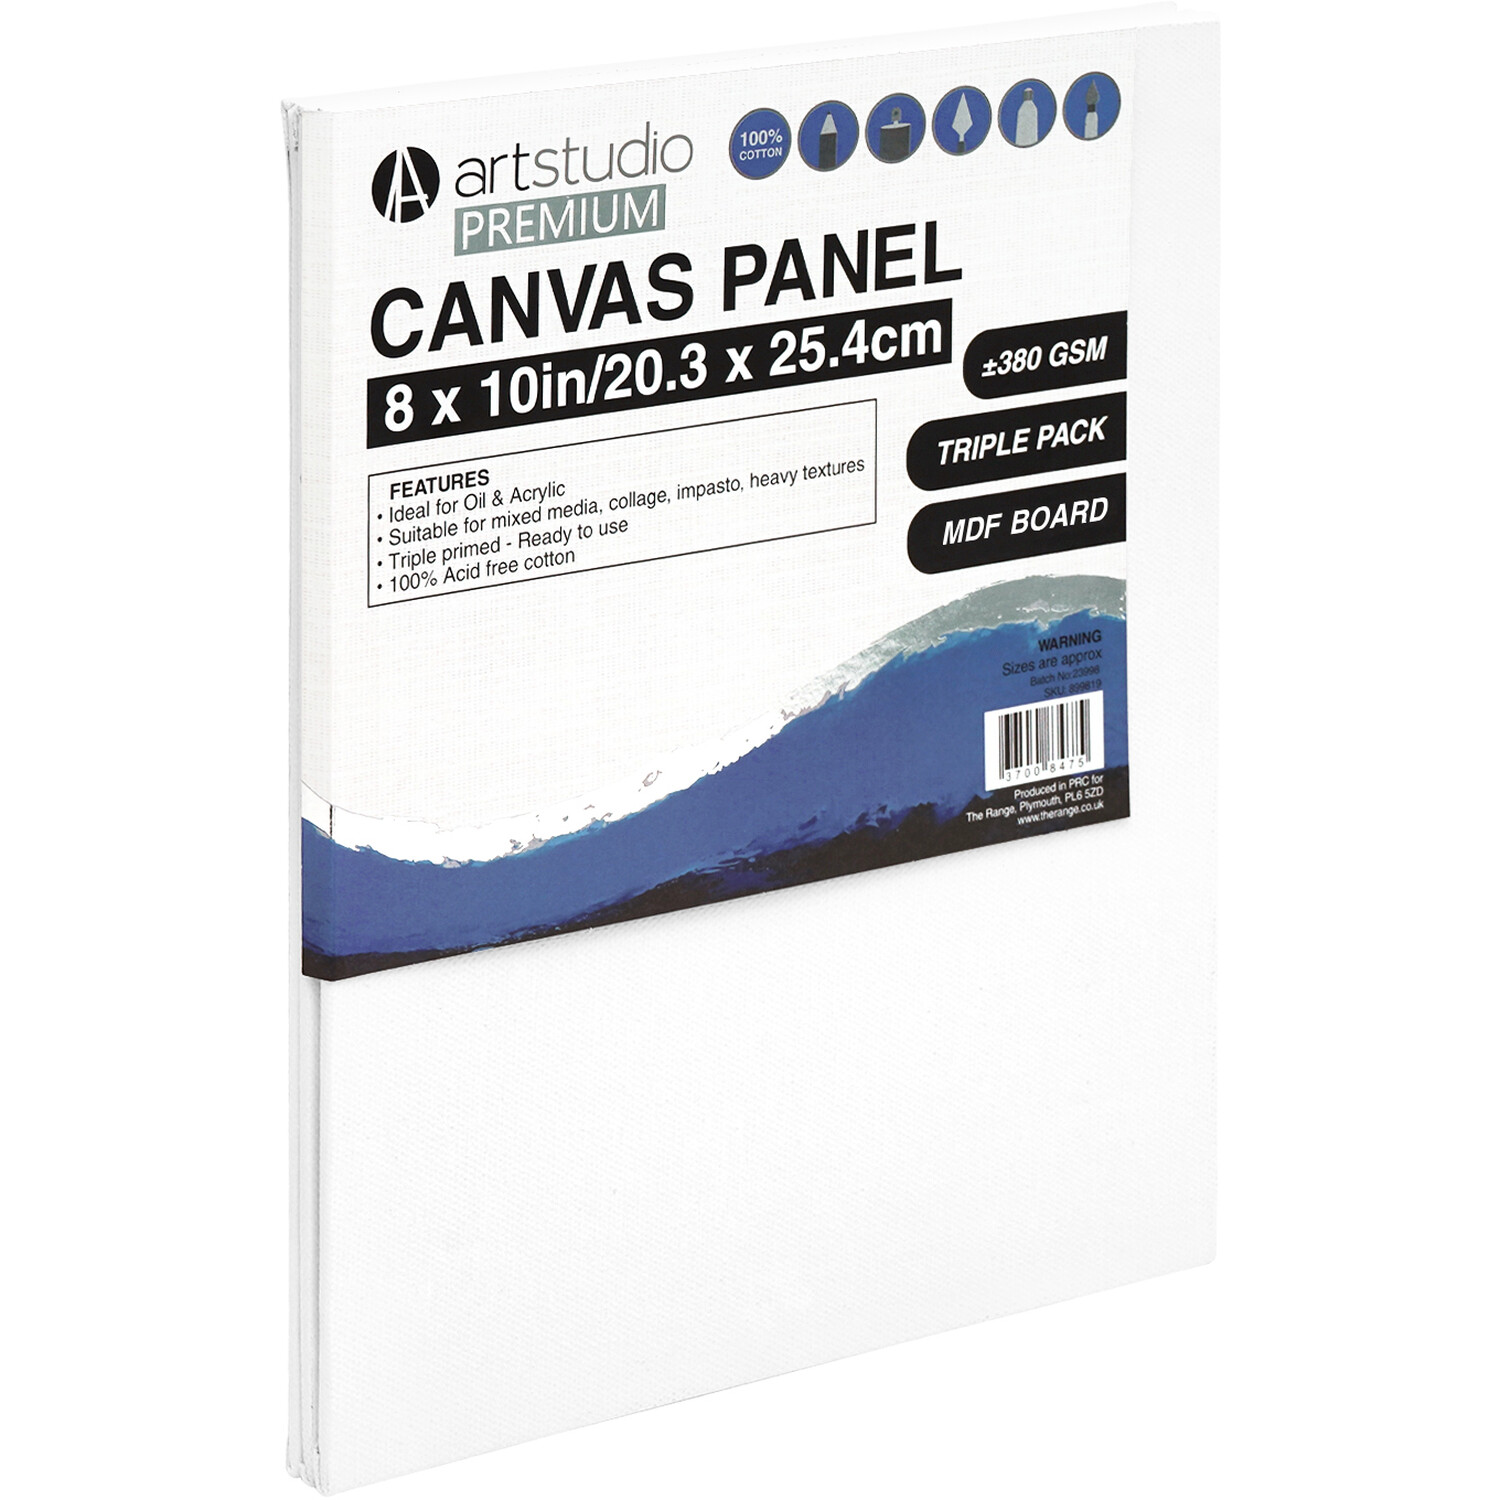 Art Studio Premium Canvas Panel 20.3 x 25.4cm 3 Pack Image 2